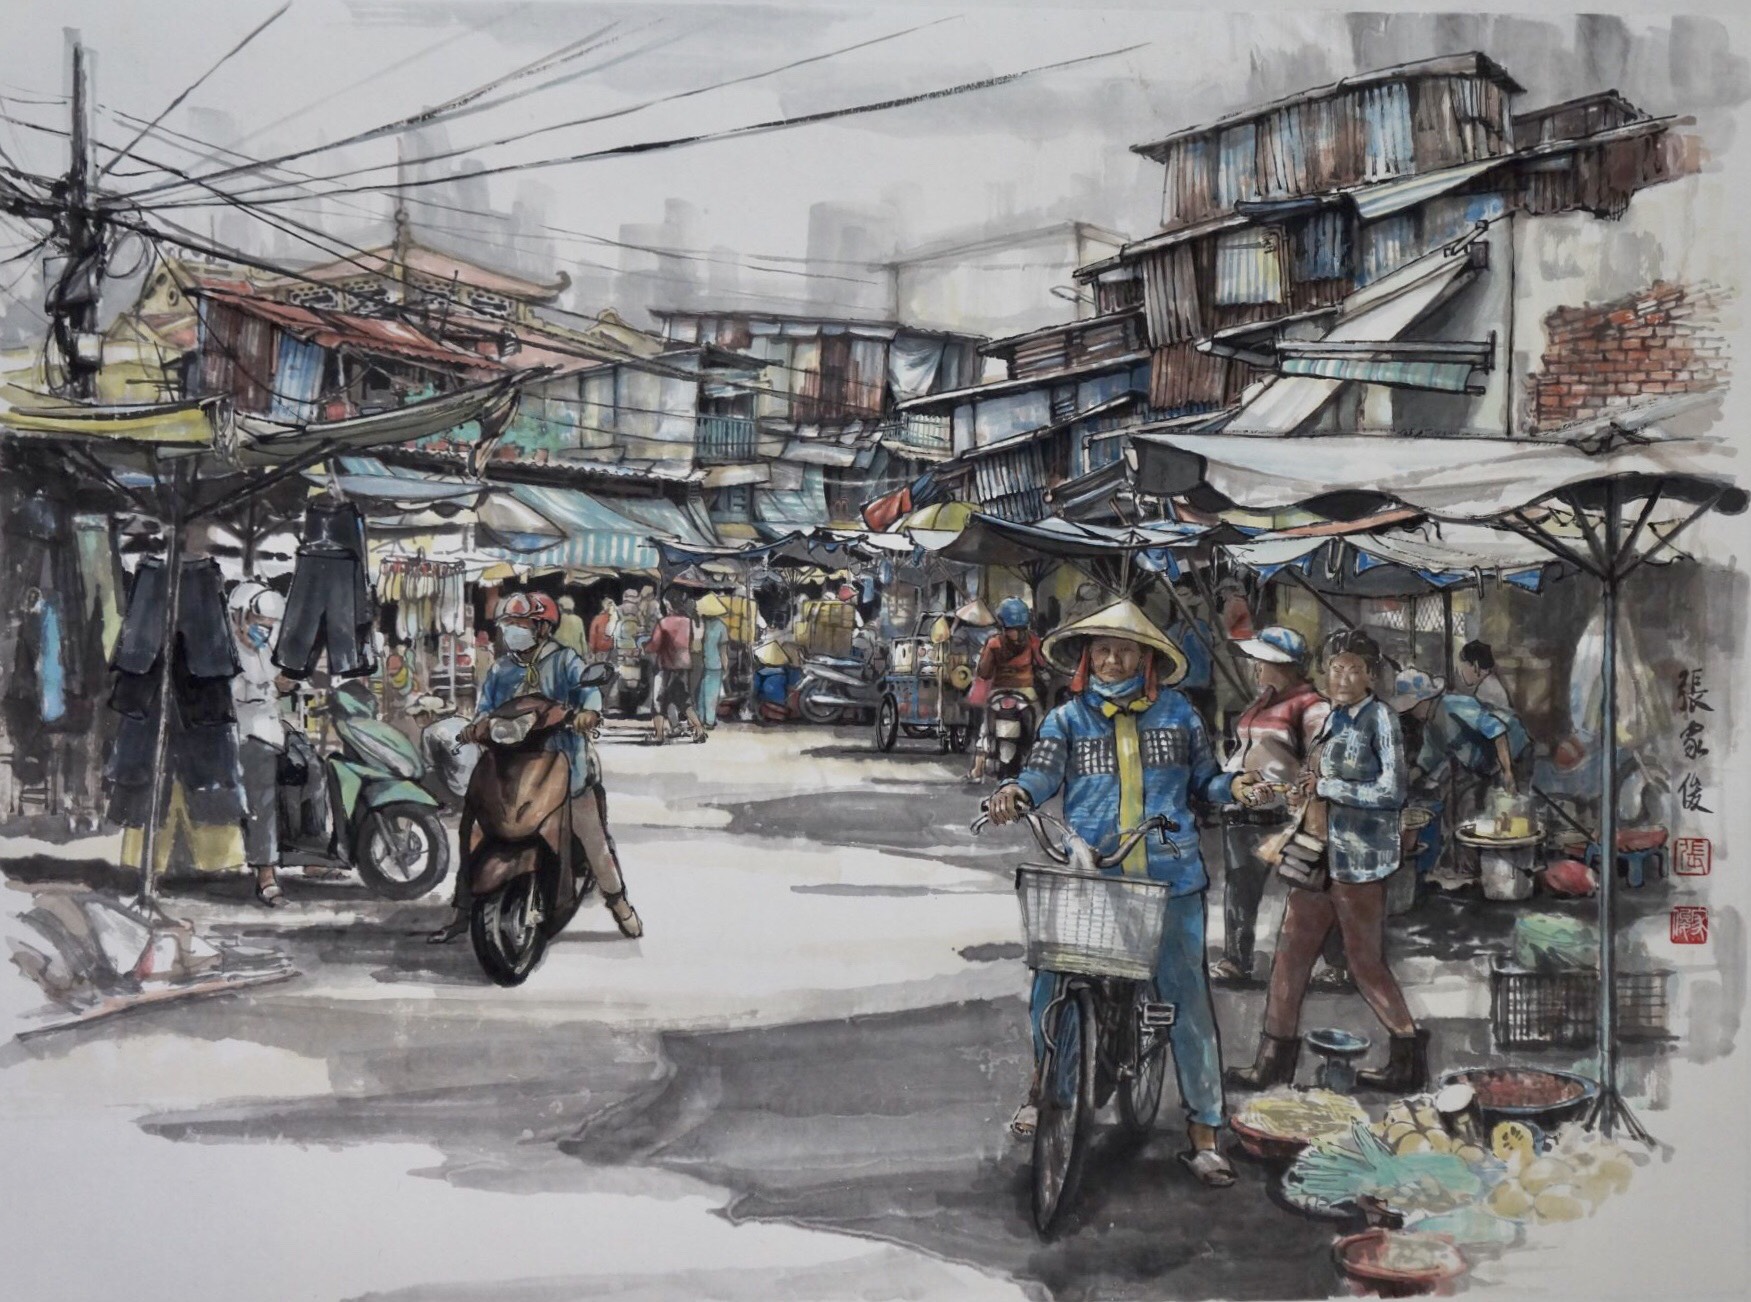 Nếu bạn muốn khám phá văn hóa đa dạng tại Sài Gòn, đừng bỏ lỡ Chợ Lớn - một điểm đến không thể thiếu. Hãy xem hình ảnh liên quan để khám phá sự phong phú của khu phố cổ này.